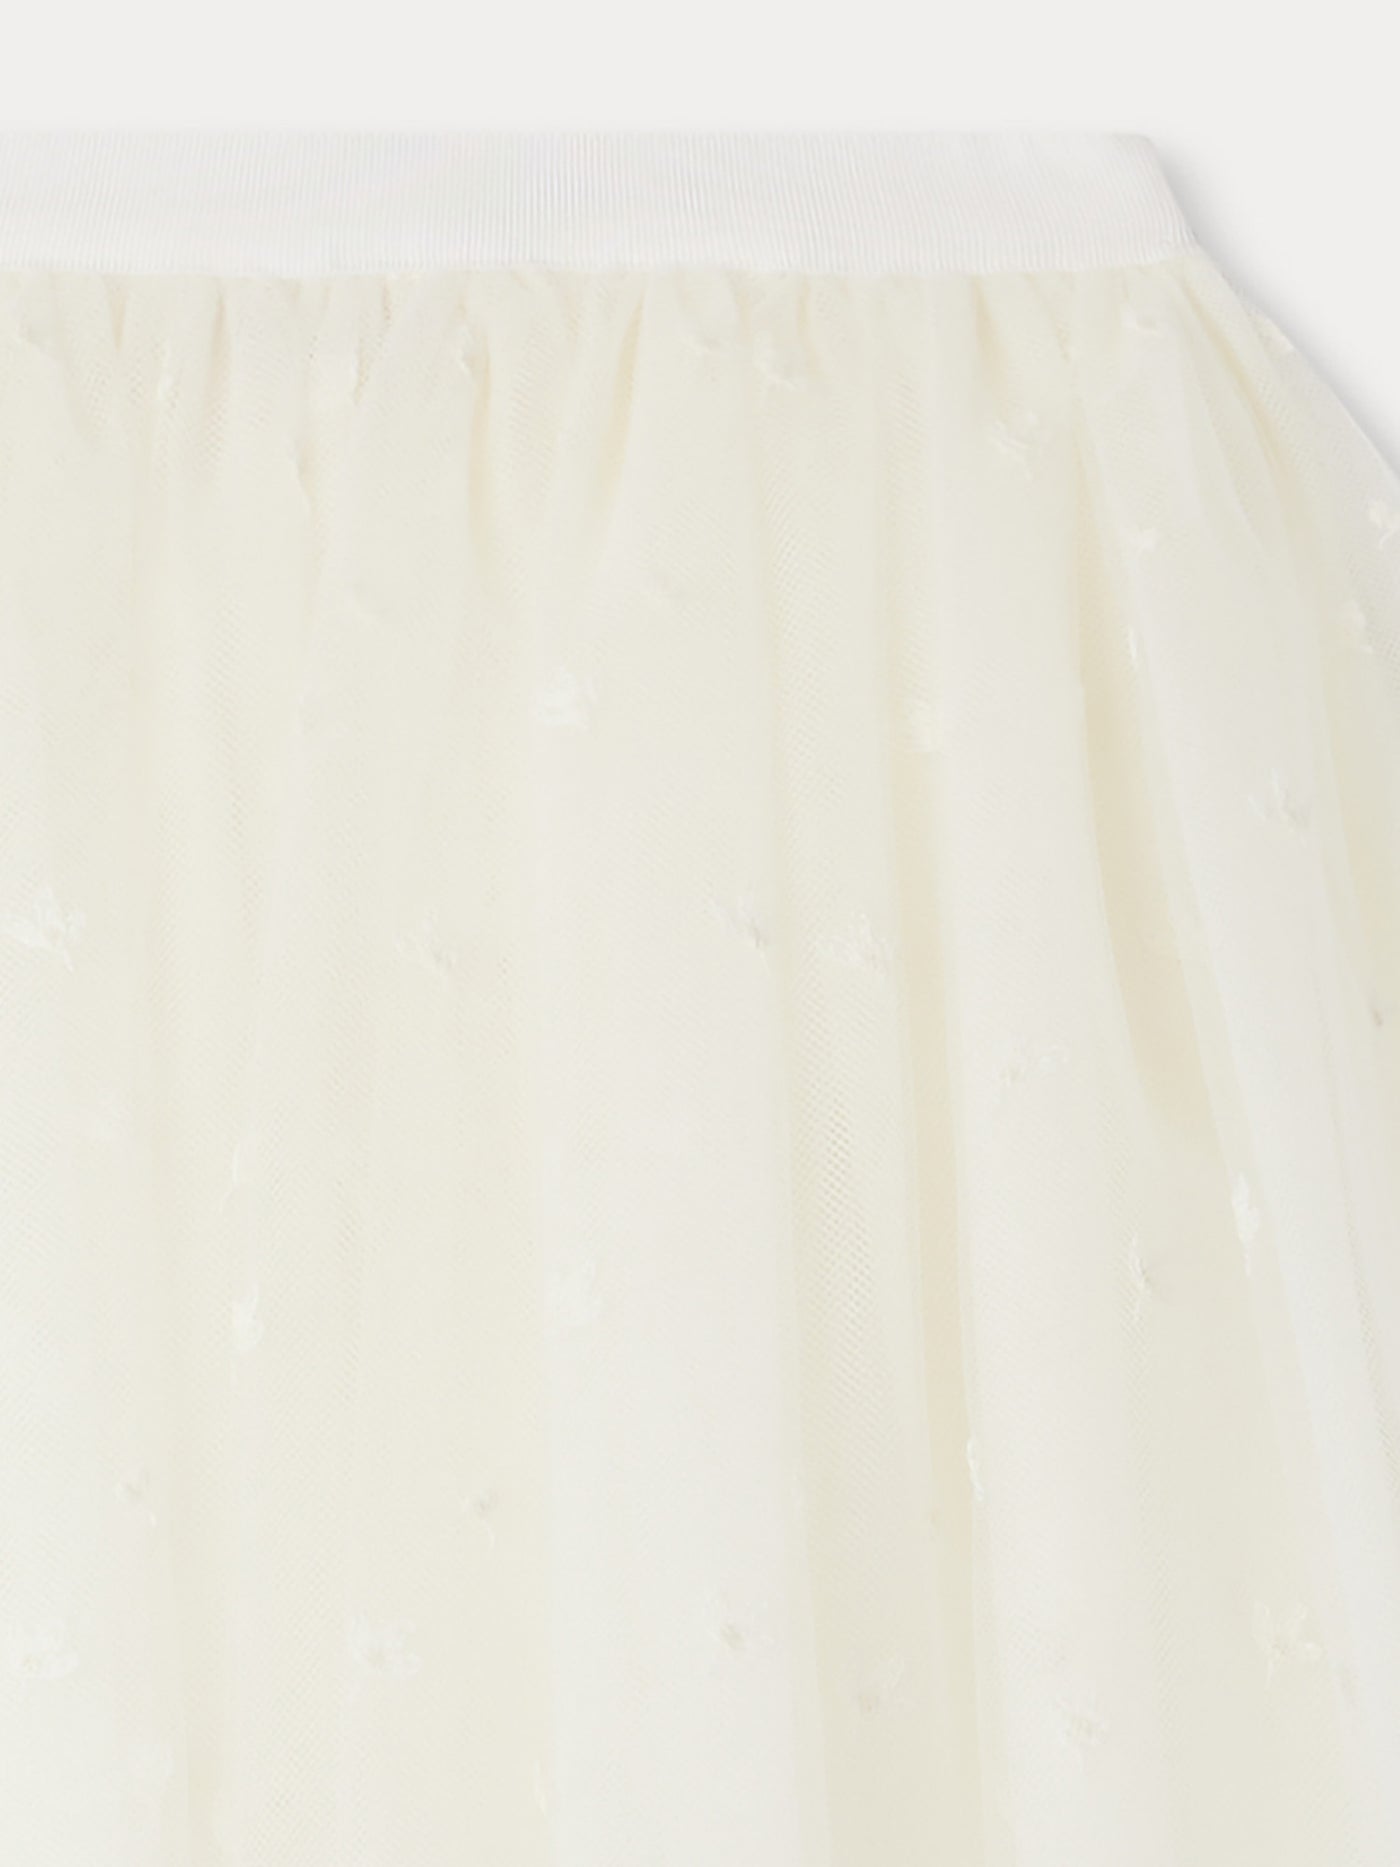 Pois Skirt milk white